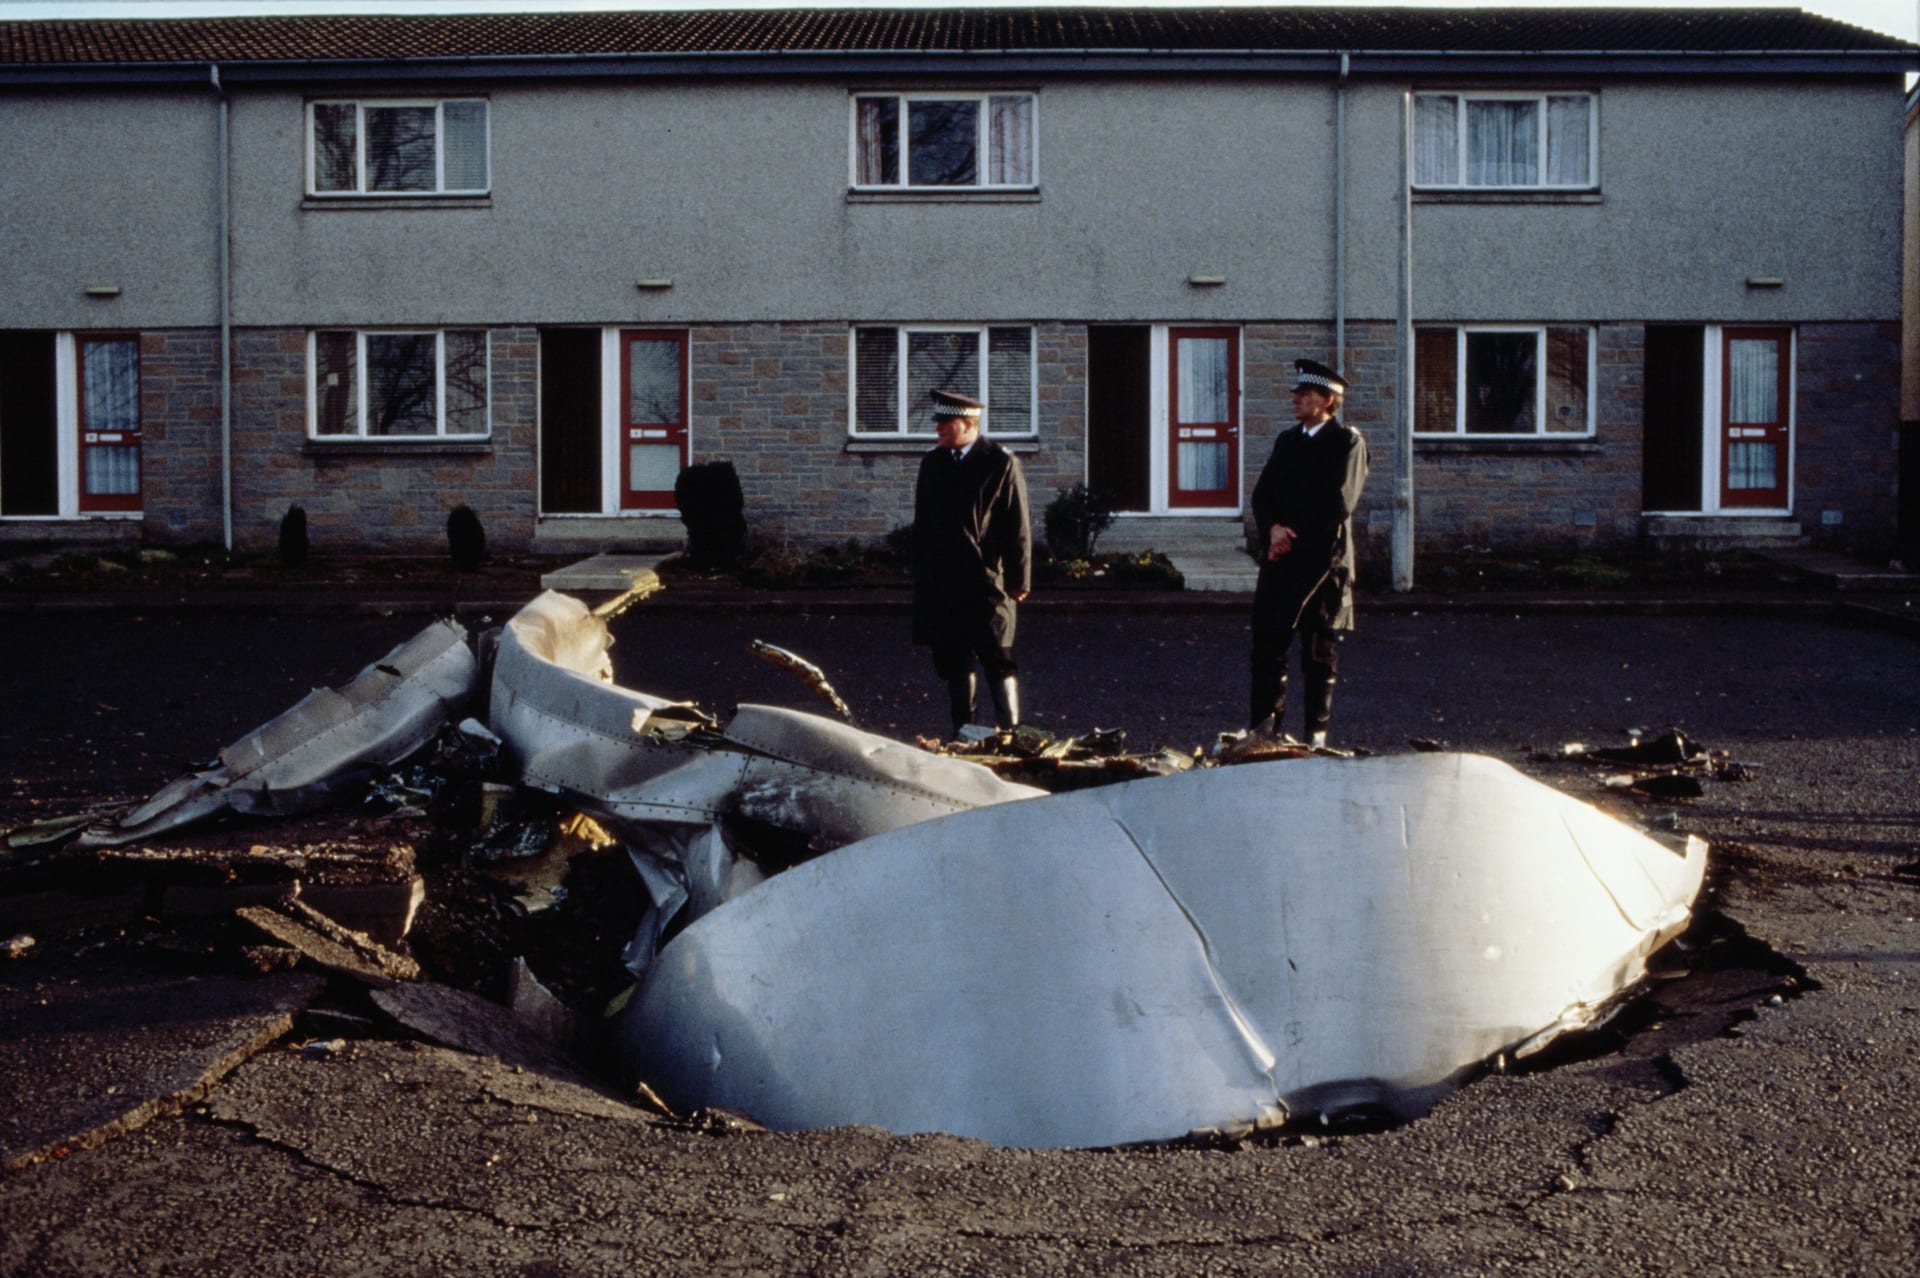 Letadlo společnosti Pan Am explodovalo 21. prosince 1988. Jeho trosky dopadly na skotské městečko Lockerbie.